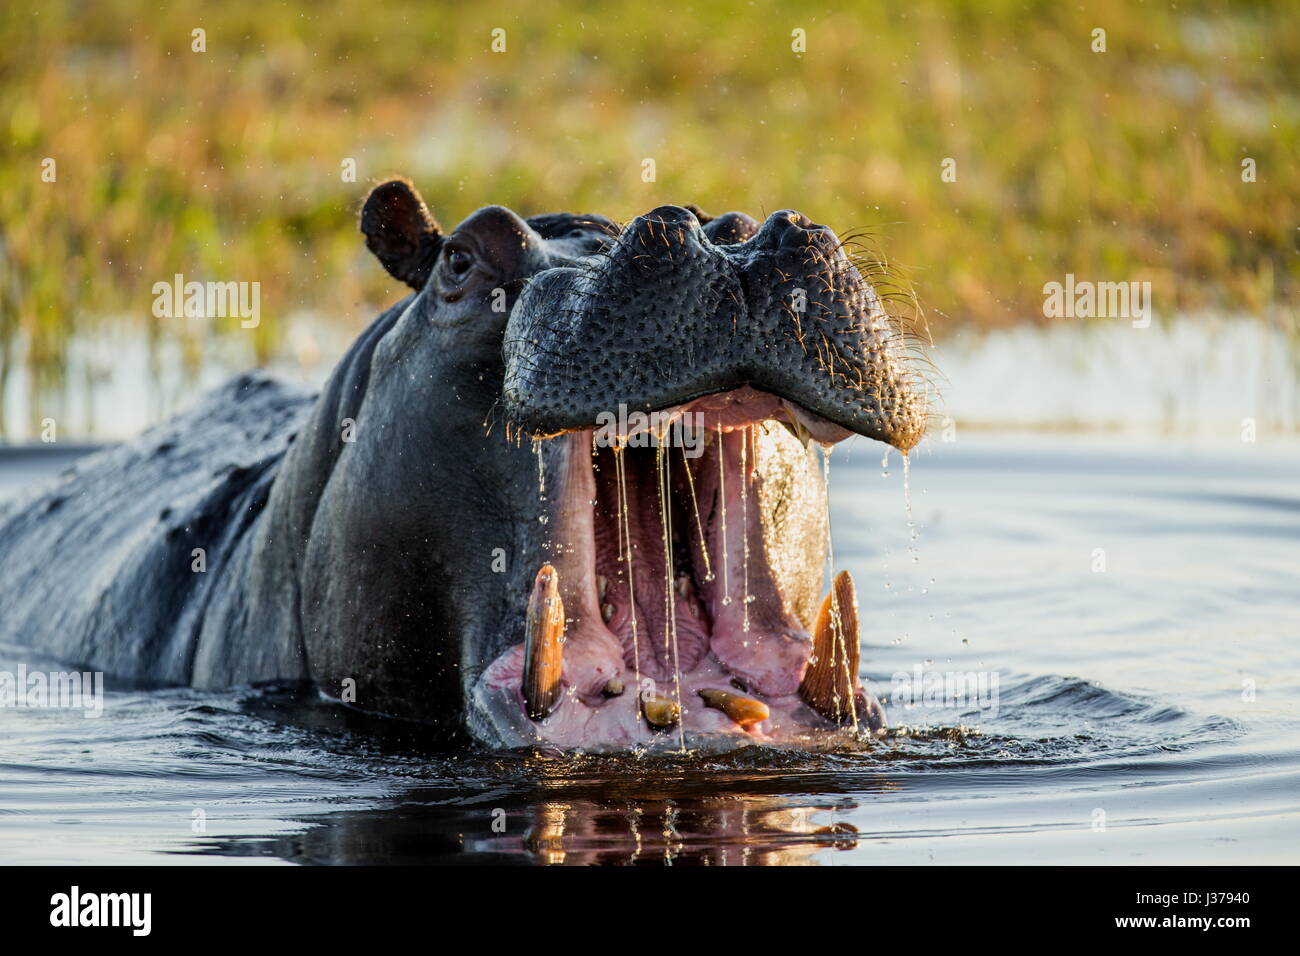 Das Nilpferd sitzt im Wasser, öffnet seinen Mund und gähnt. Botswana. Okavango Delta. Stockfoto